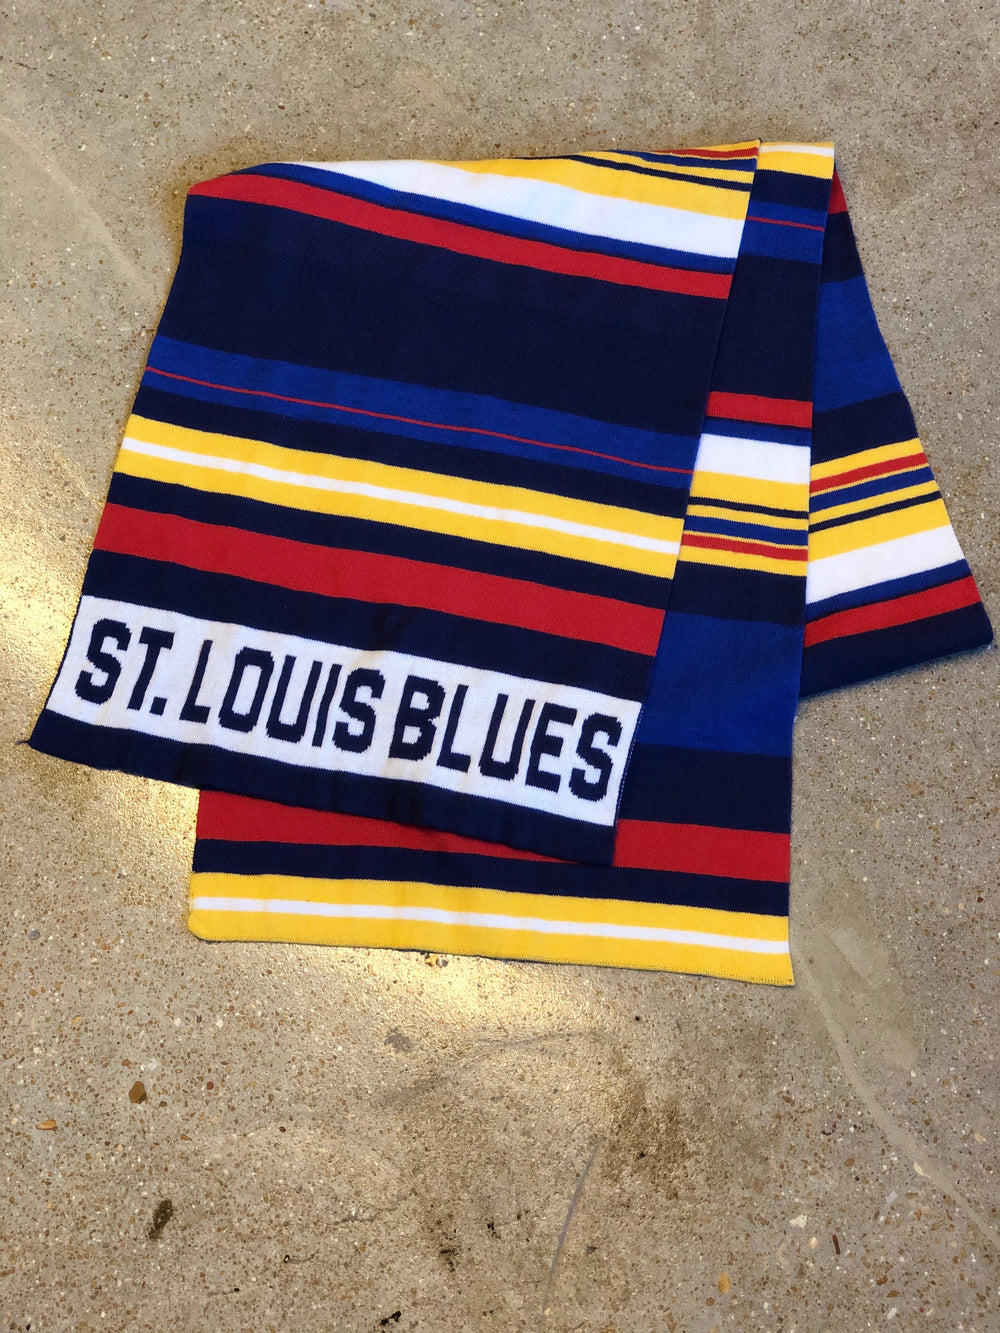 ST. LOUIS BLUES LUSSO STYLE NOTE STRAPBACK HAT - ARCTIC CAMO – STL  Authentics